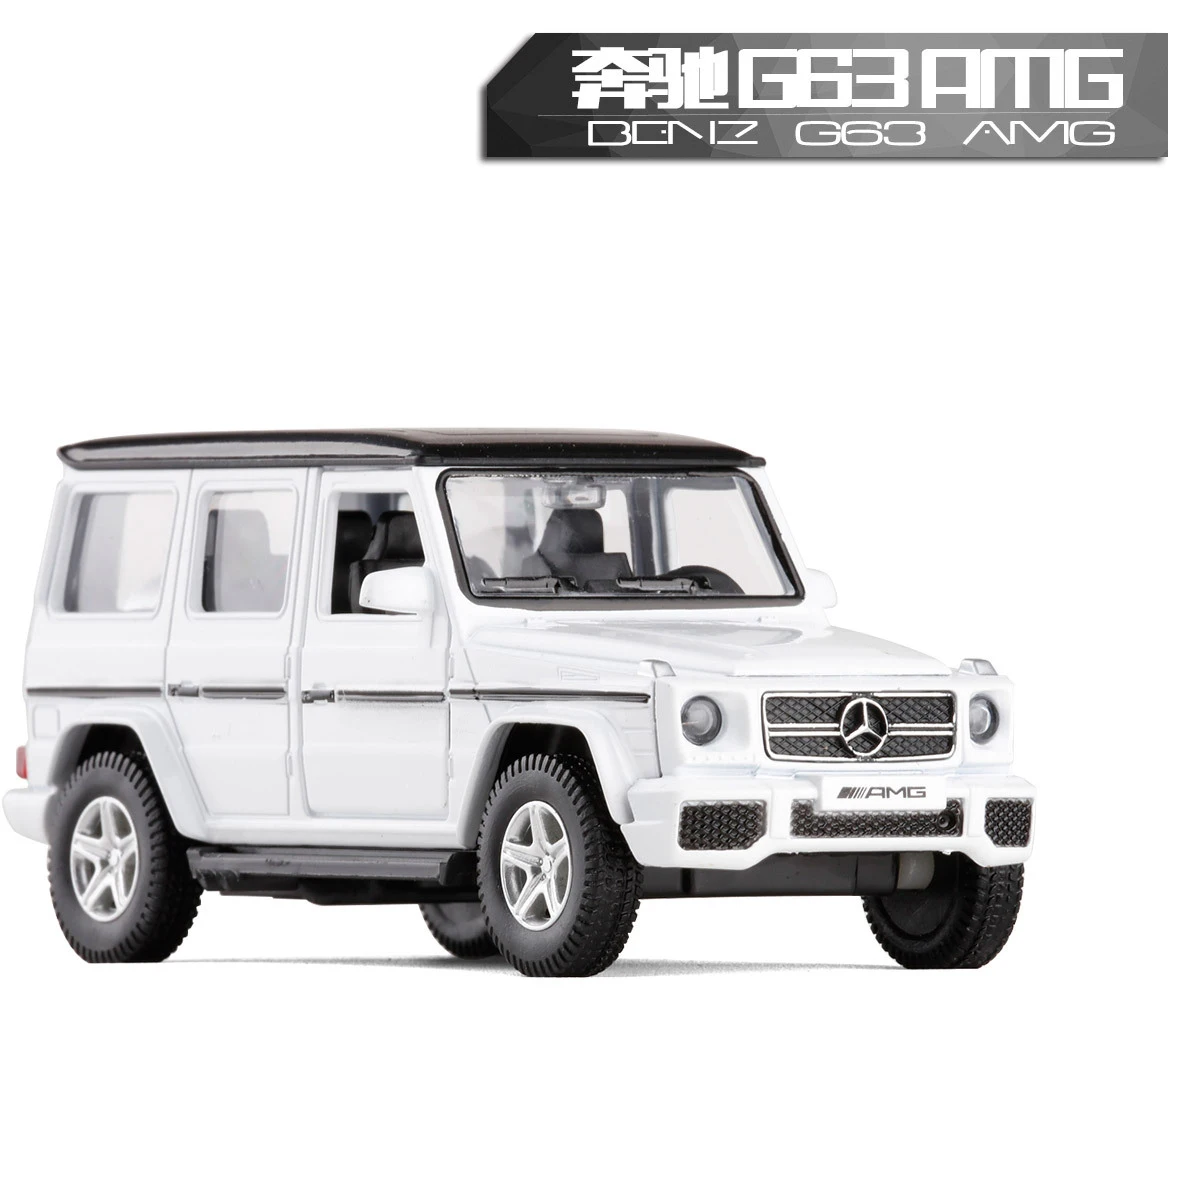 Высокая моделирования РМЗ город 1:36 Металл Benz AMG G63 литья под давлением модель игрушечного автомобиля классический сплав внедорожник модель отлично подходит для детей Подарки